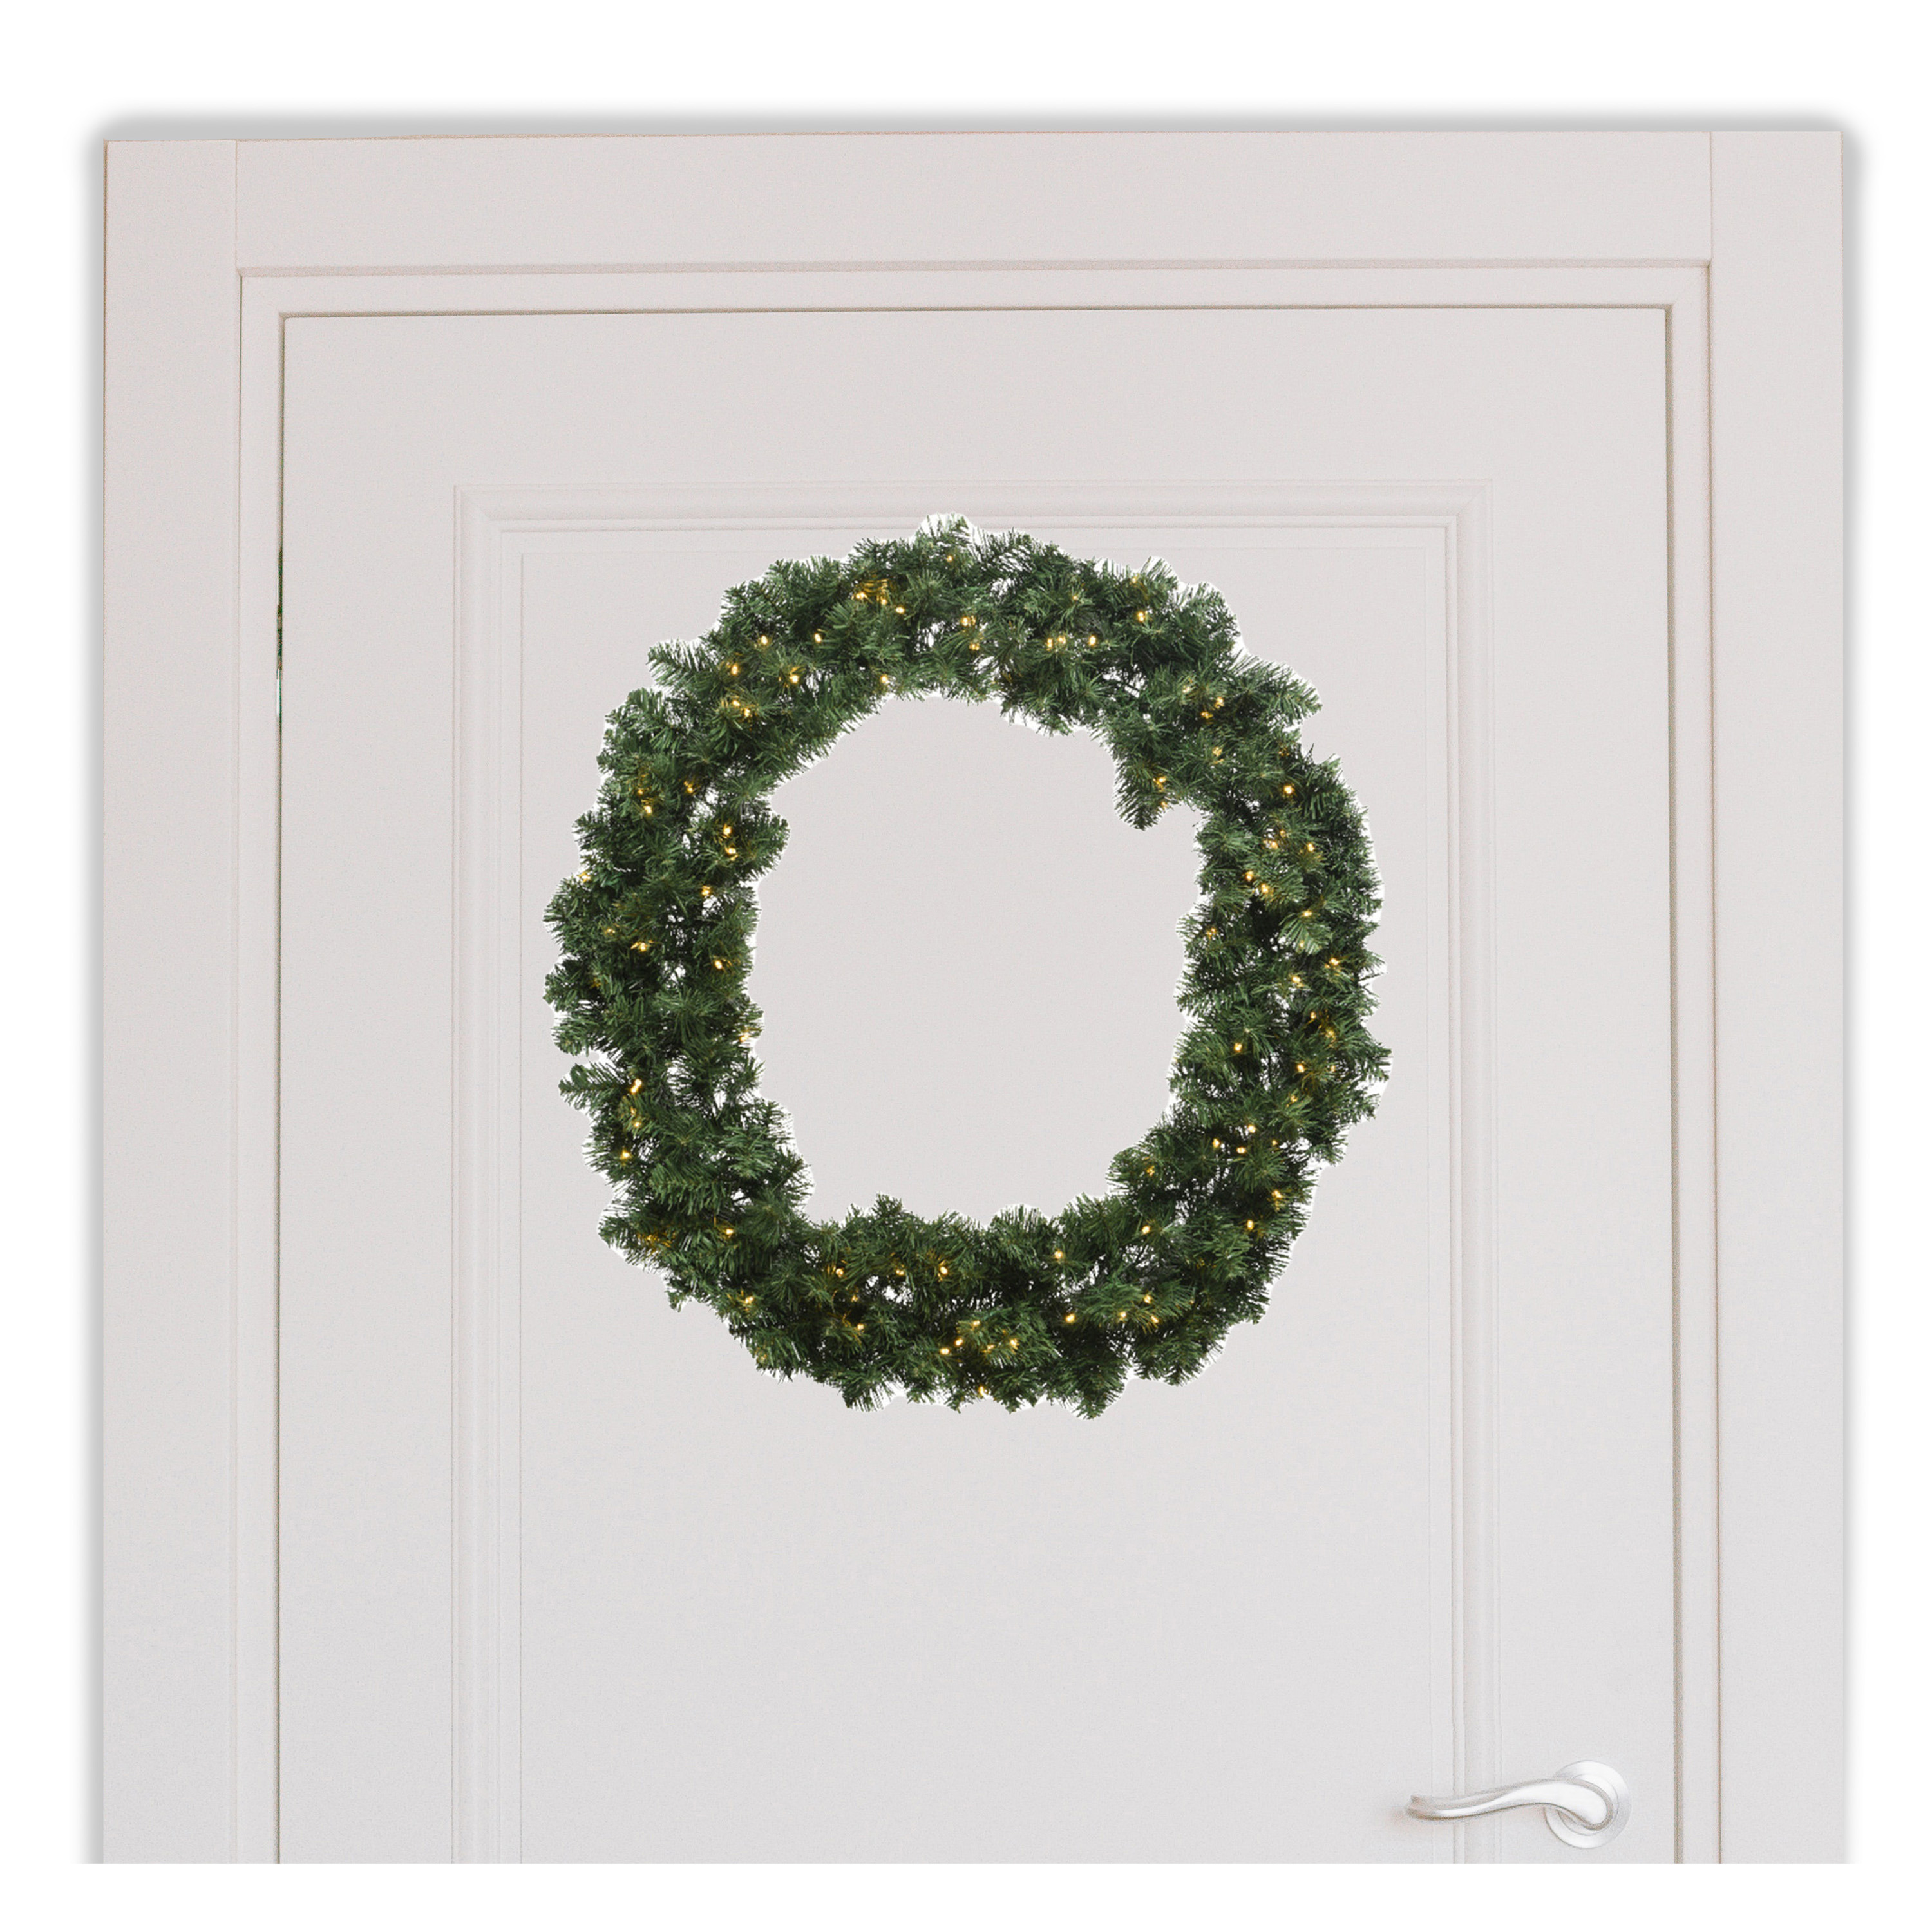 Kerstkrans-deurkrans met warm witte kerstverlichting D50 cm